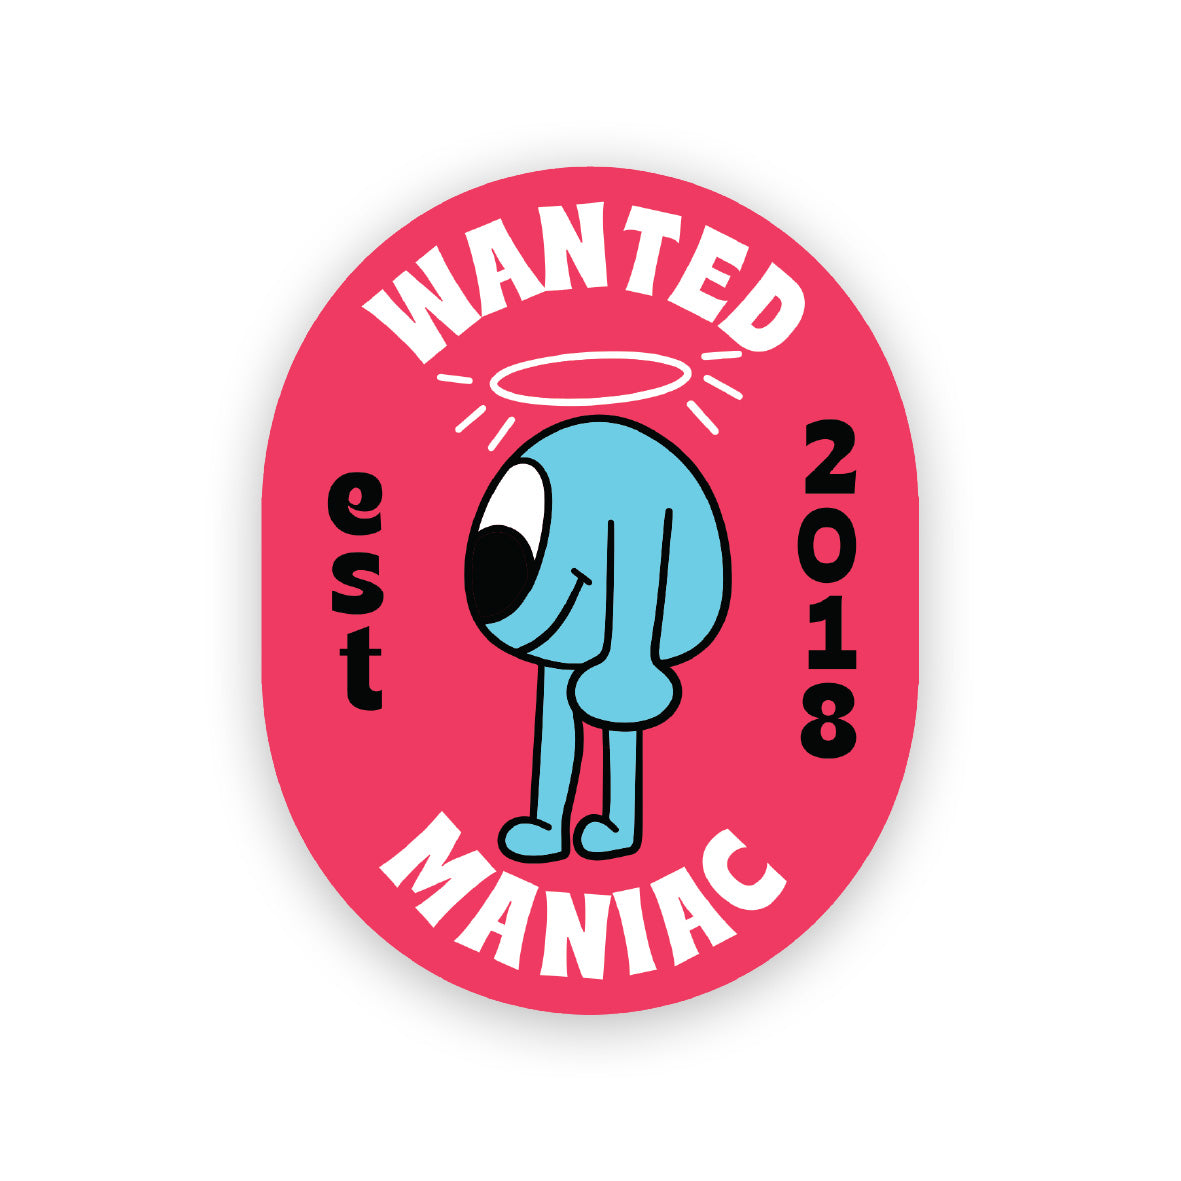 Wanted maniac Sticker